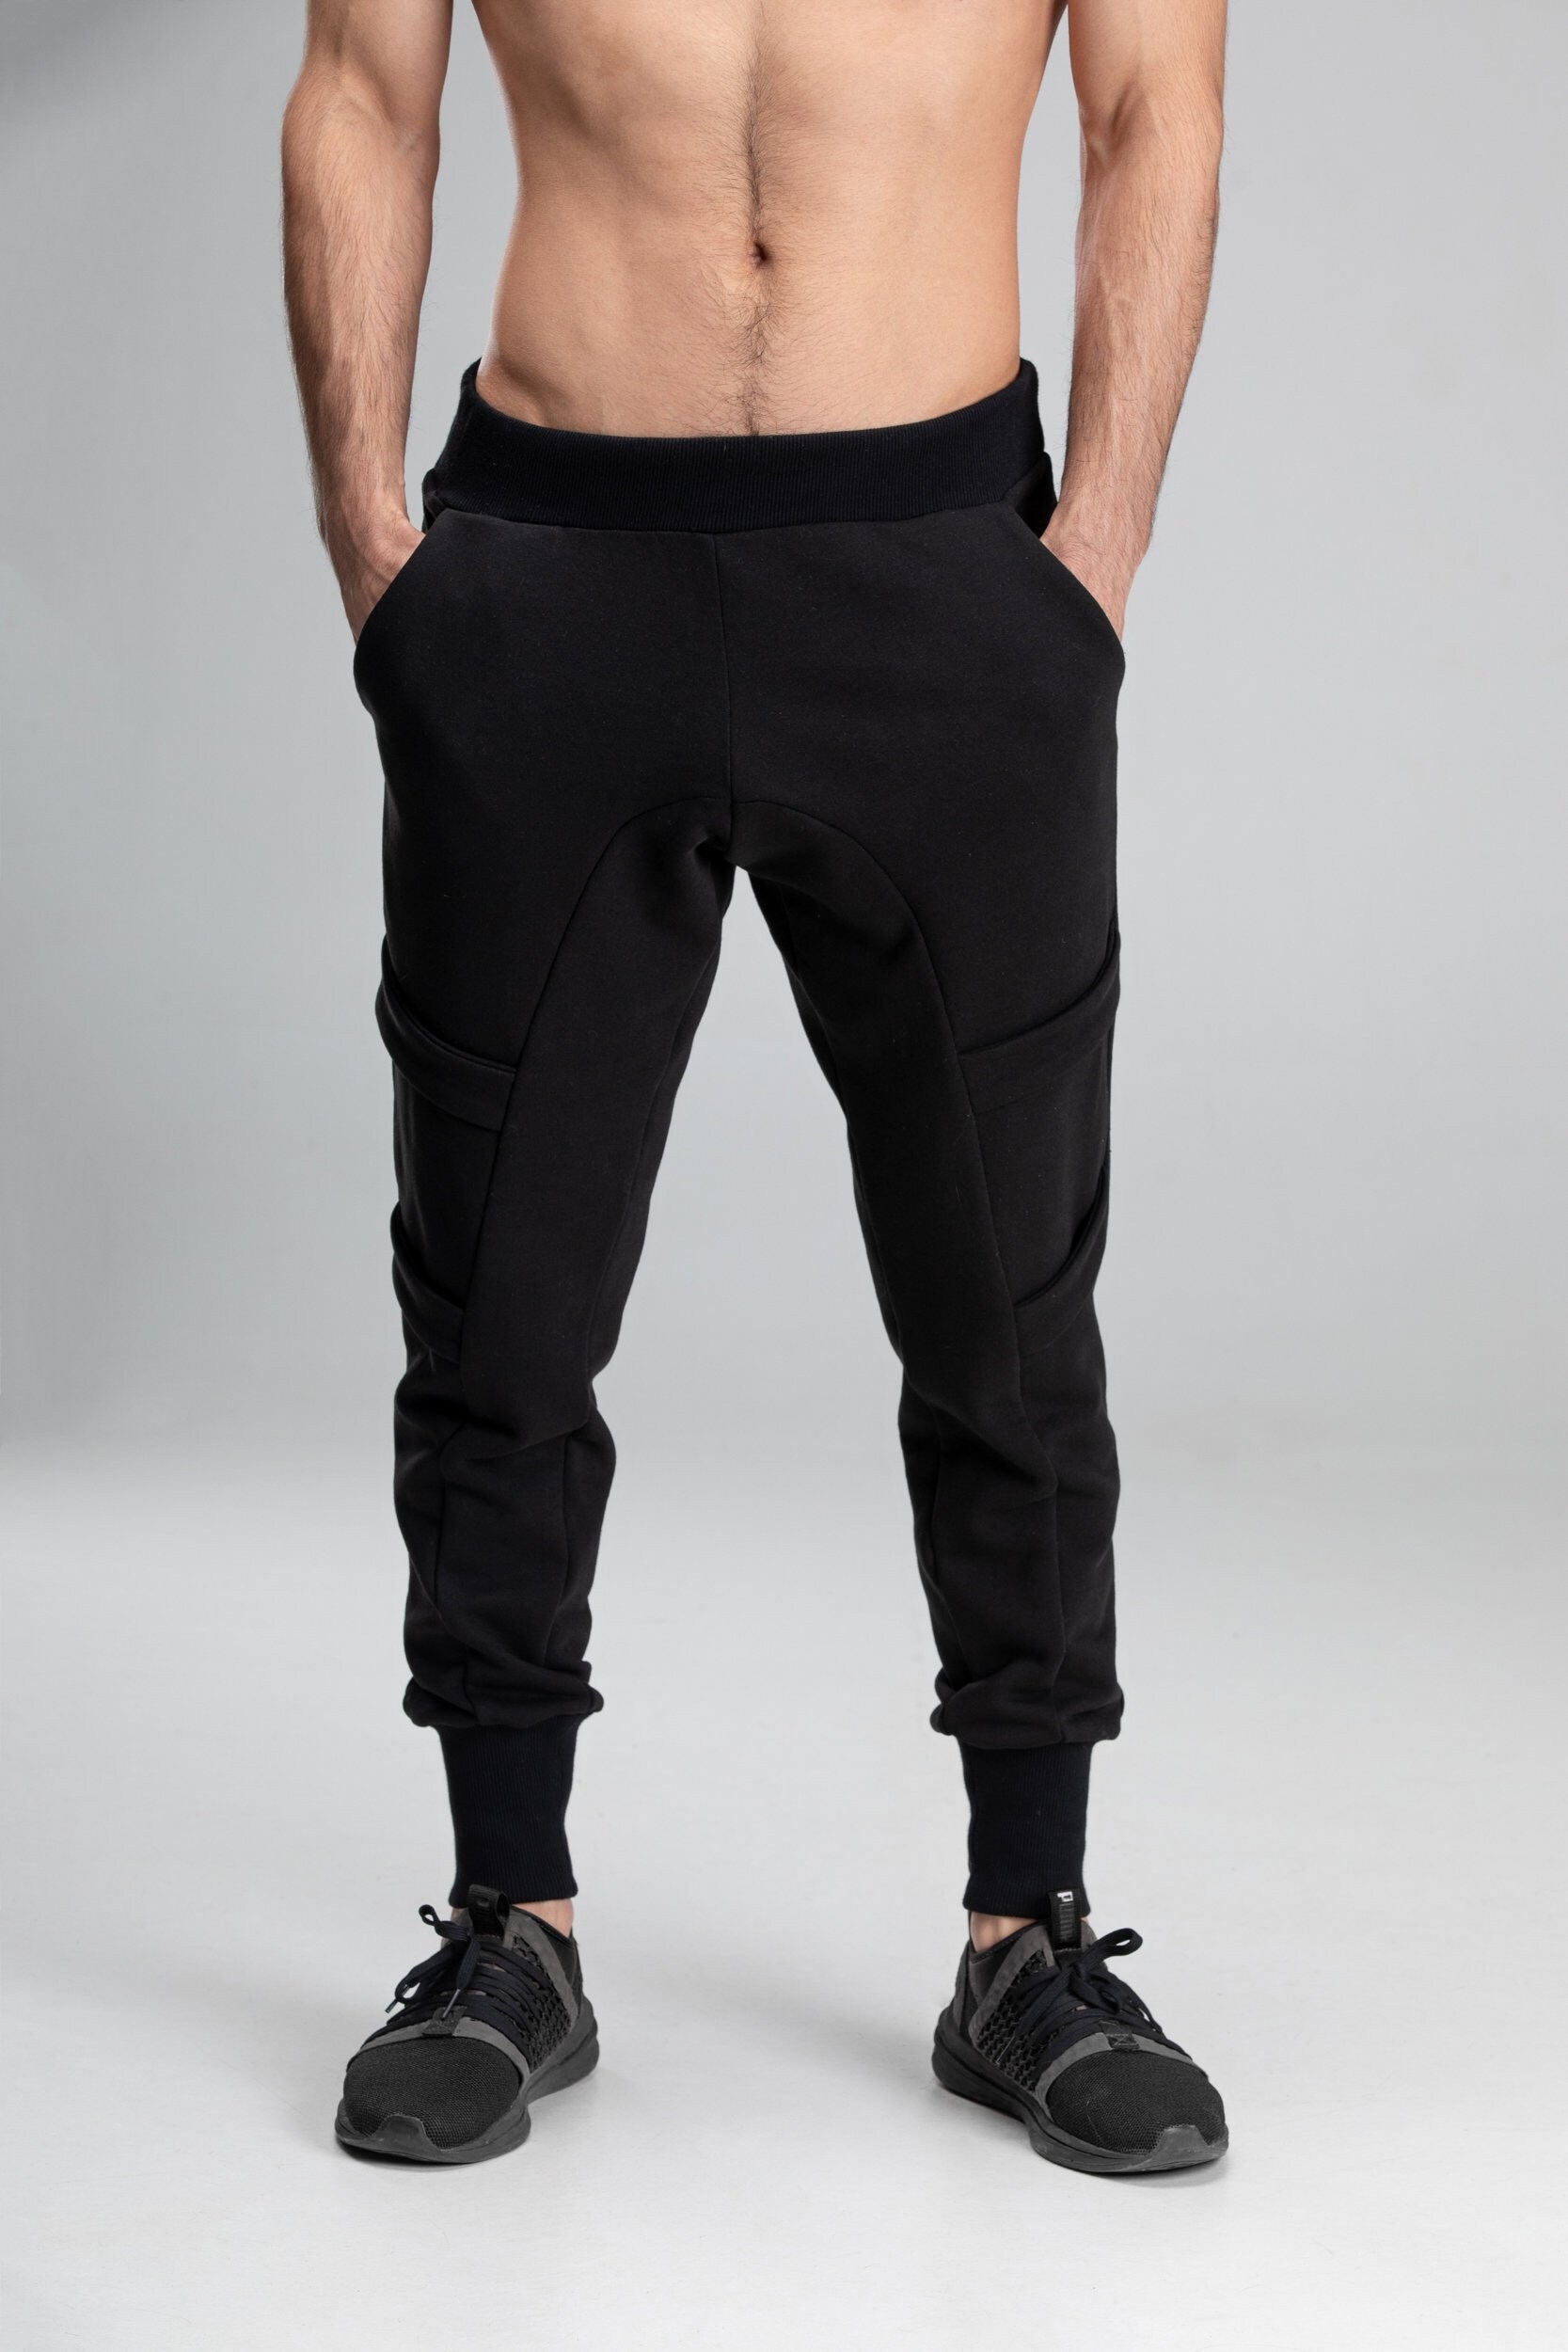 Drop crotch harem pants black baggy cargo trousers men's | Etsy